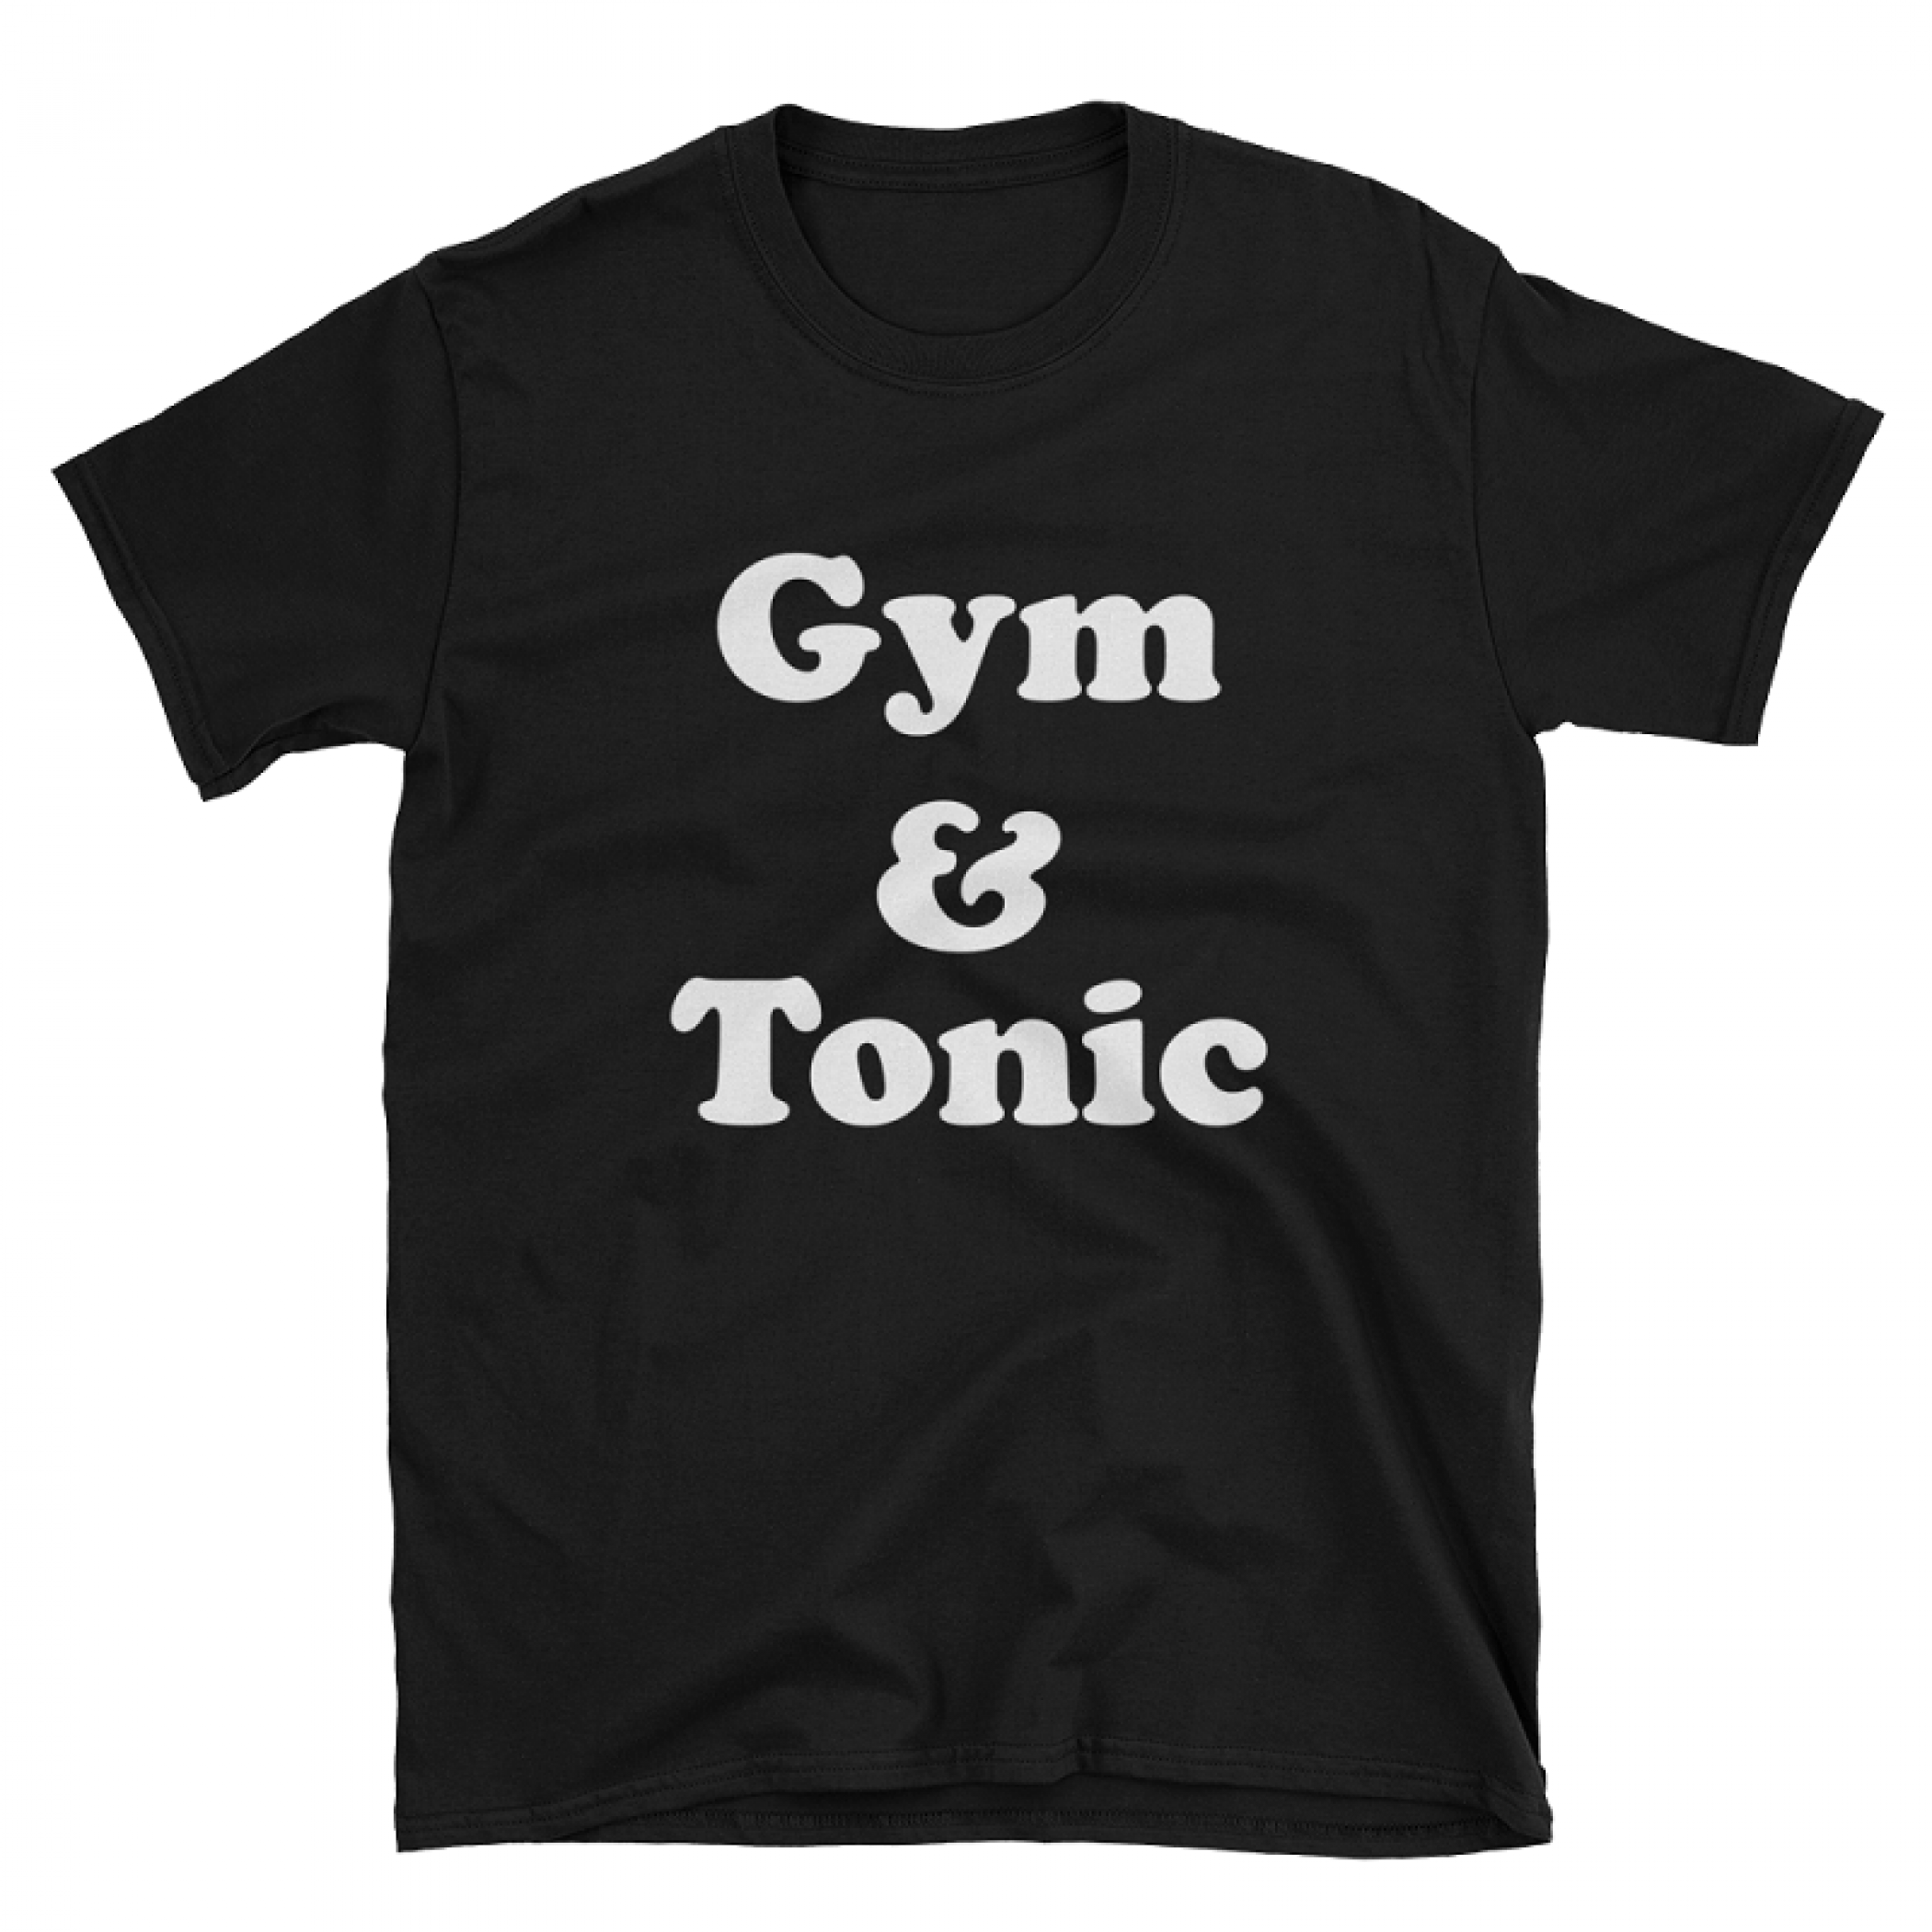 Gym and Tonic Tshirt